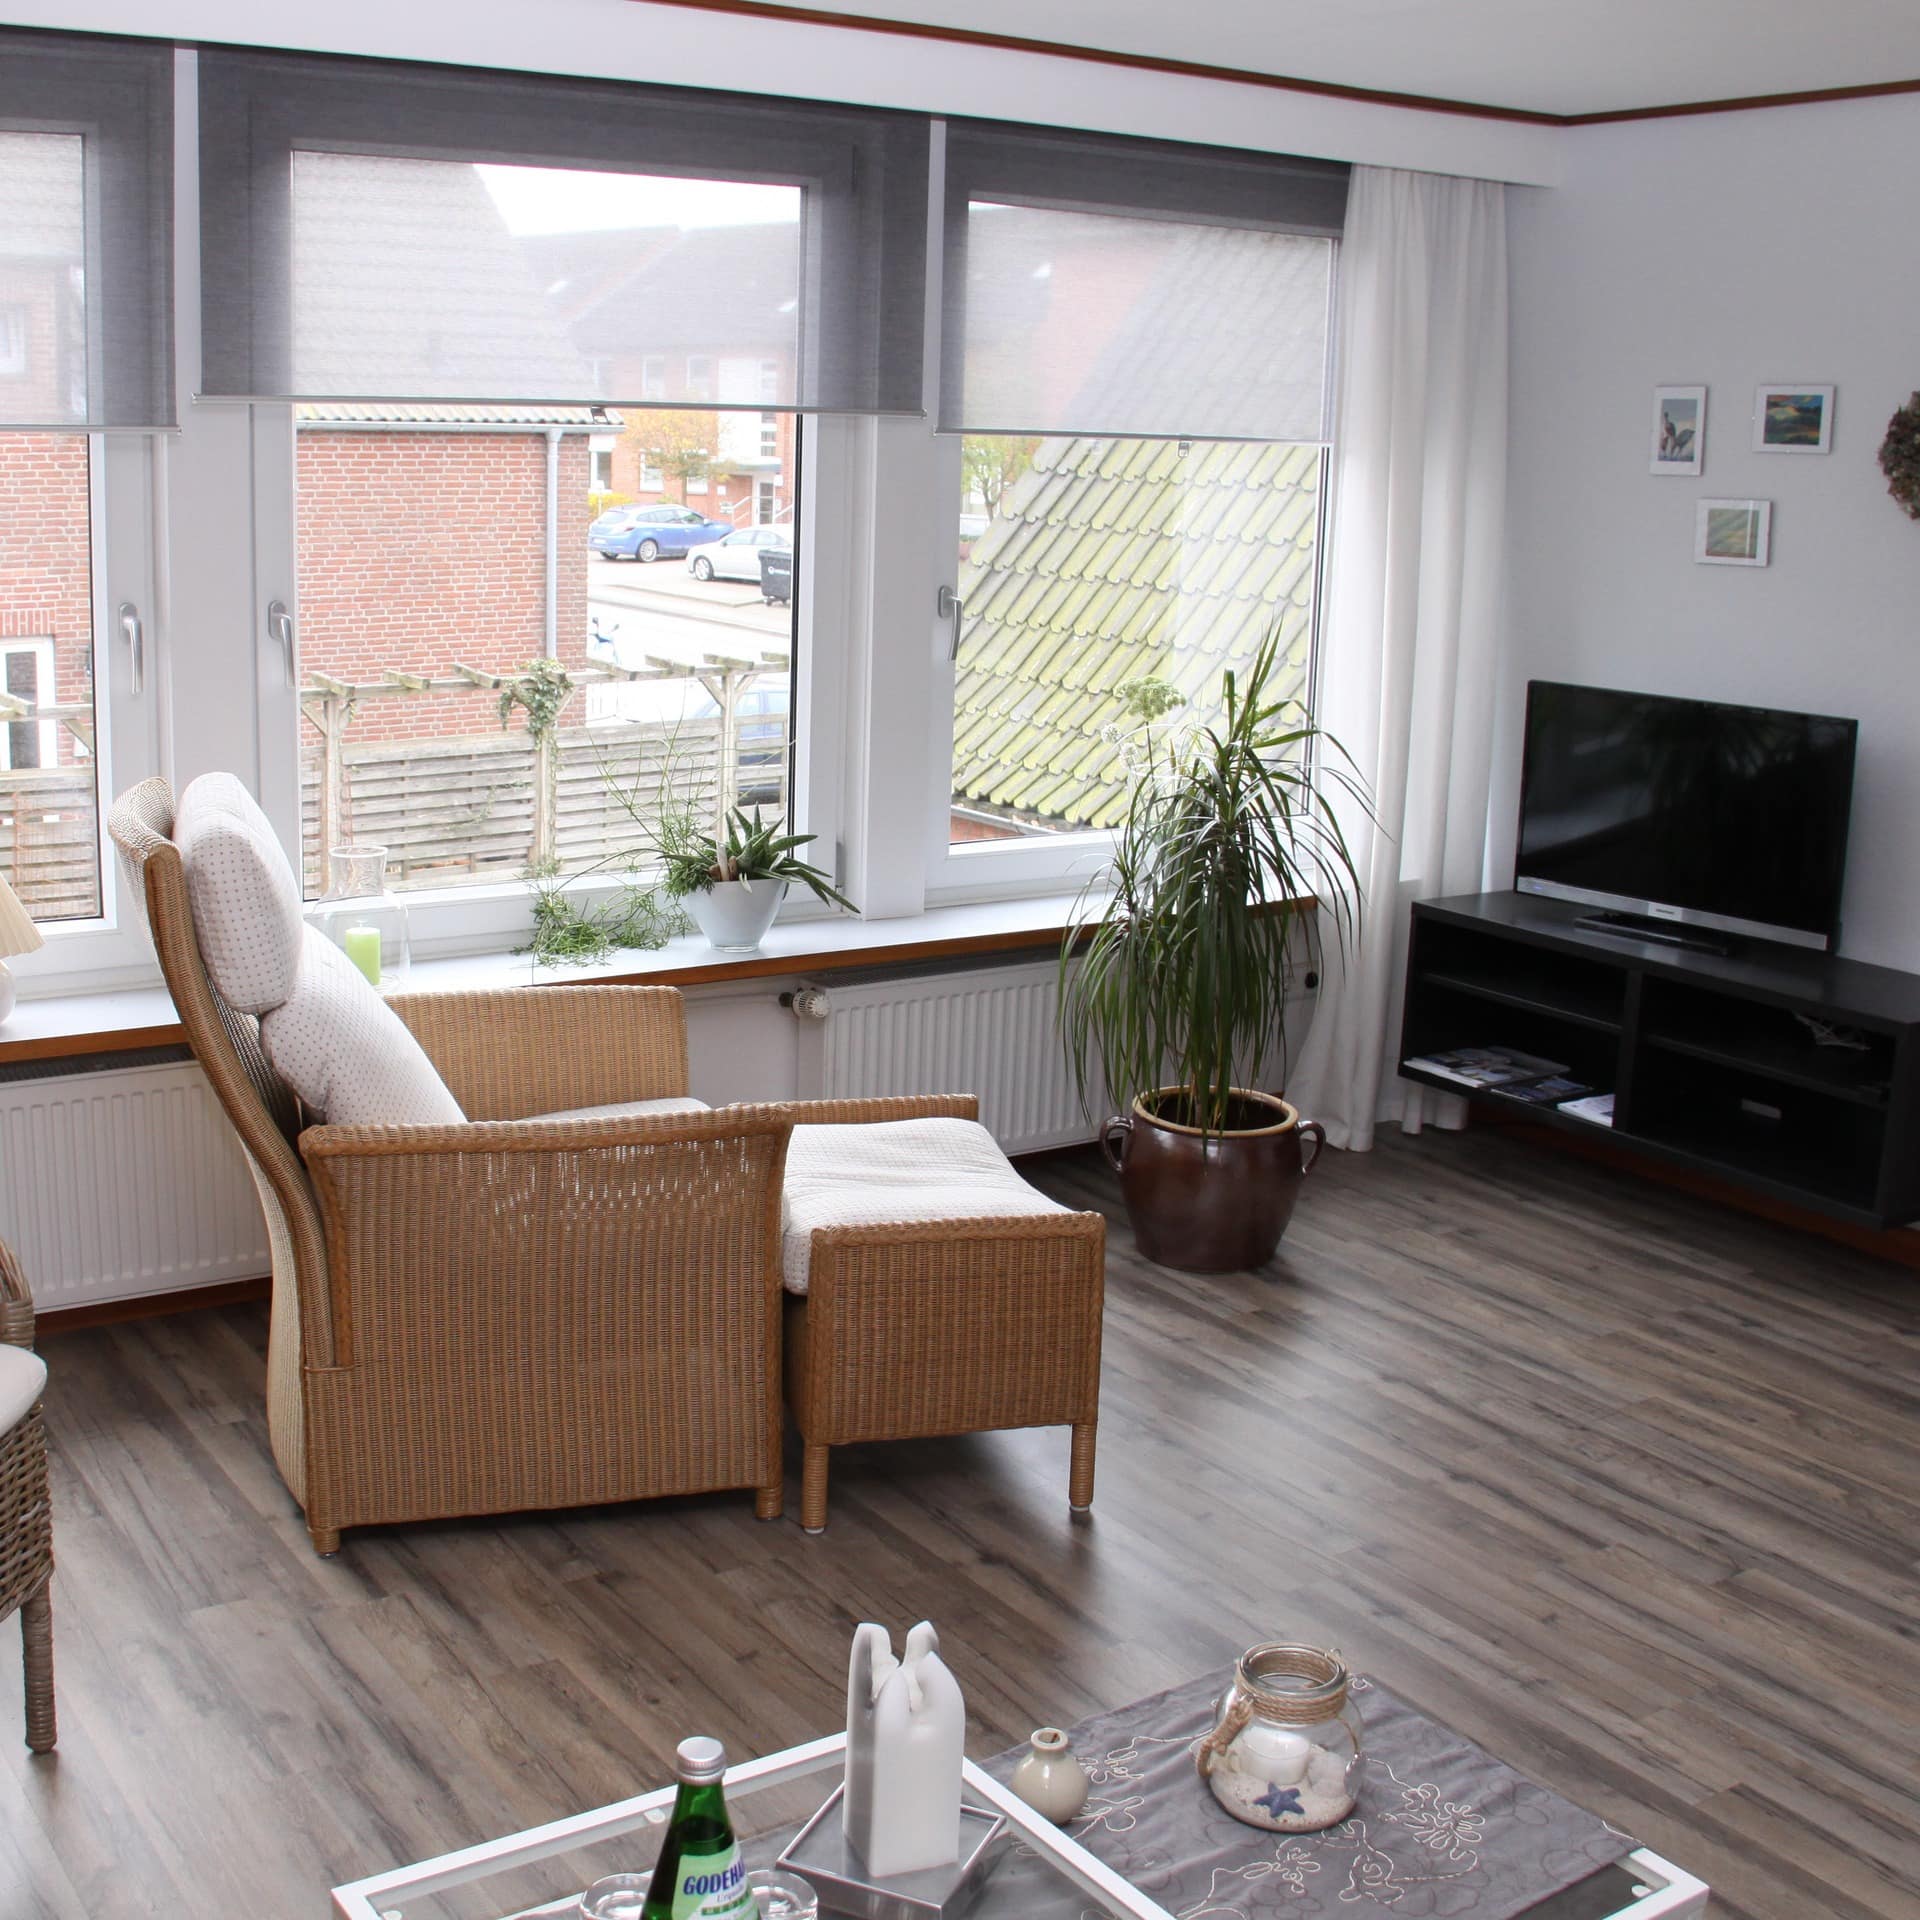 Wohnzimmer mit Sitzgelegenheiten in einer Ferienwohnung in der Innenstadt von Koblenz 